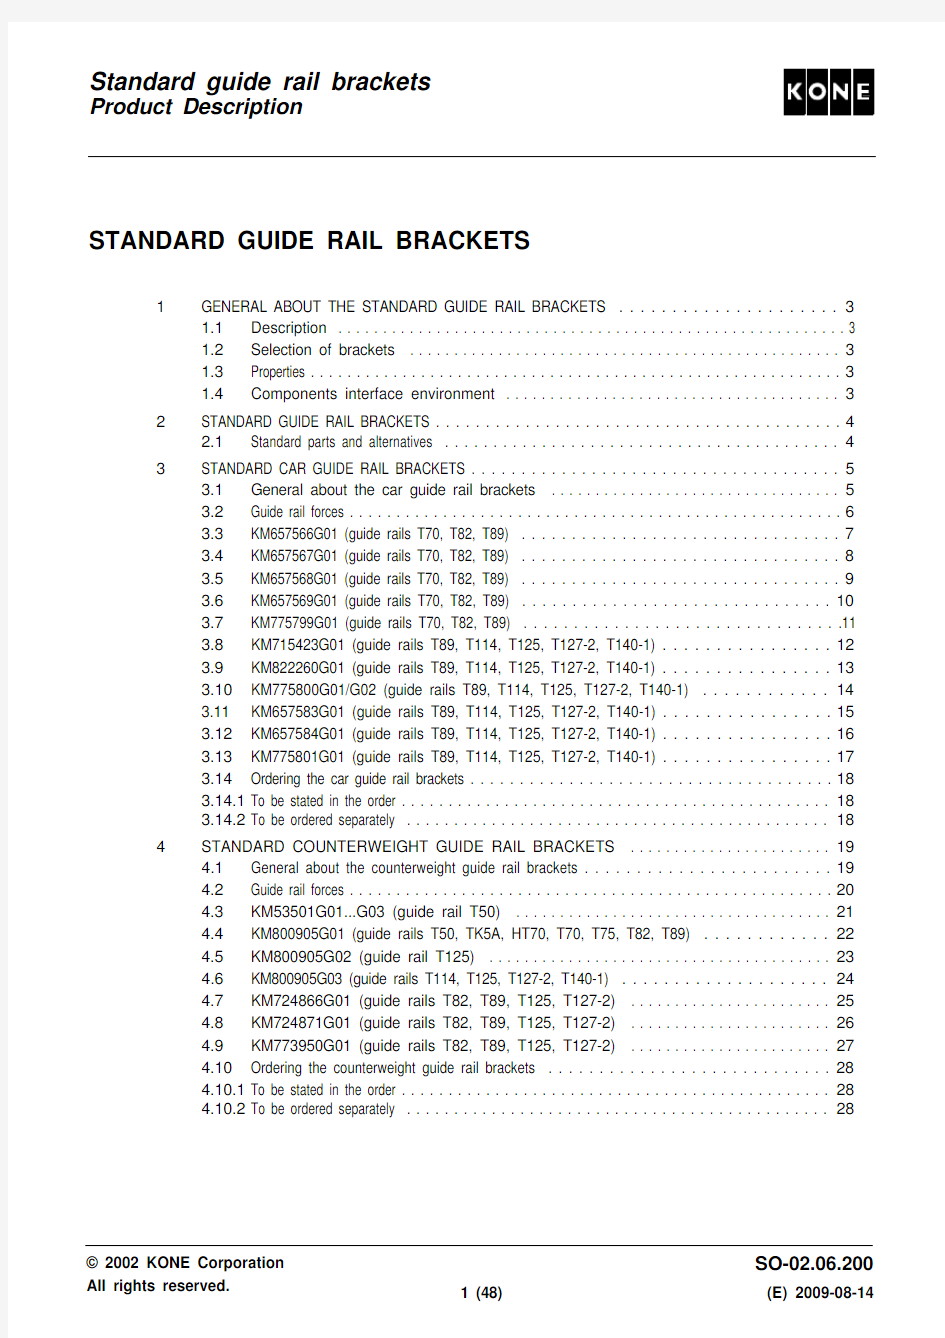 Standard guide rail brackets_en